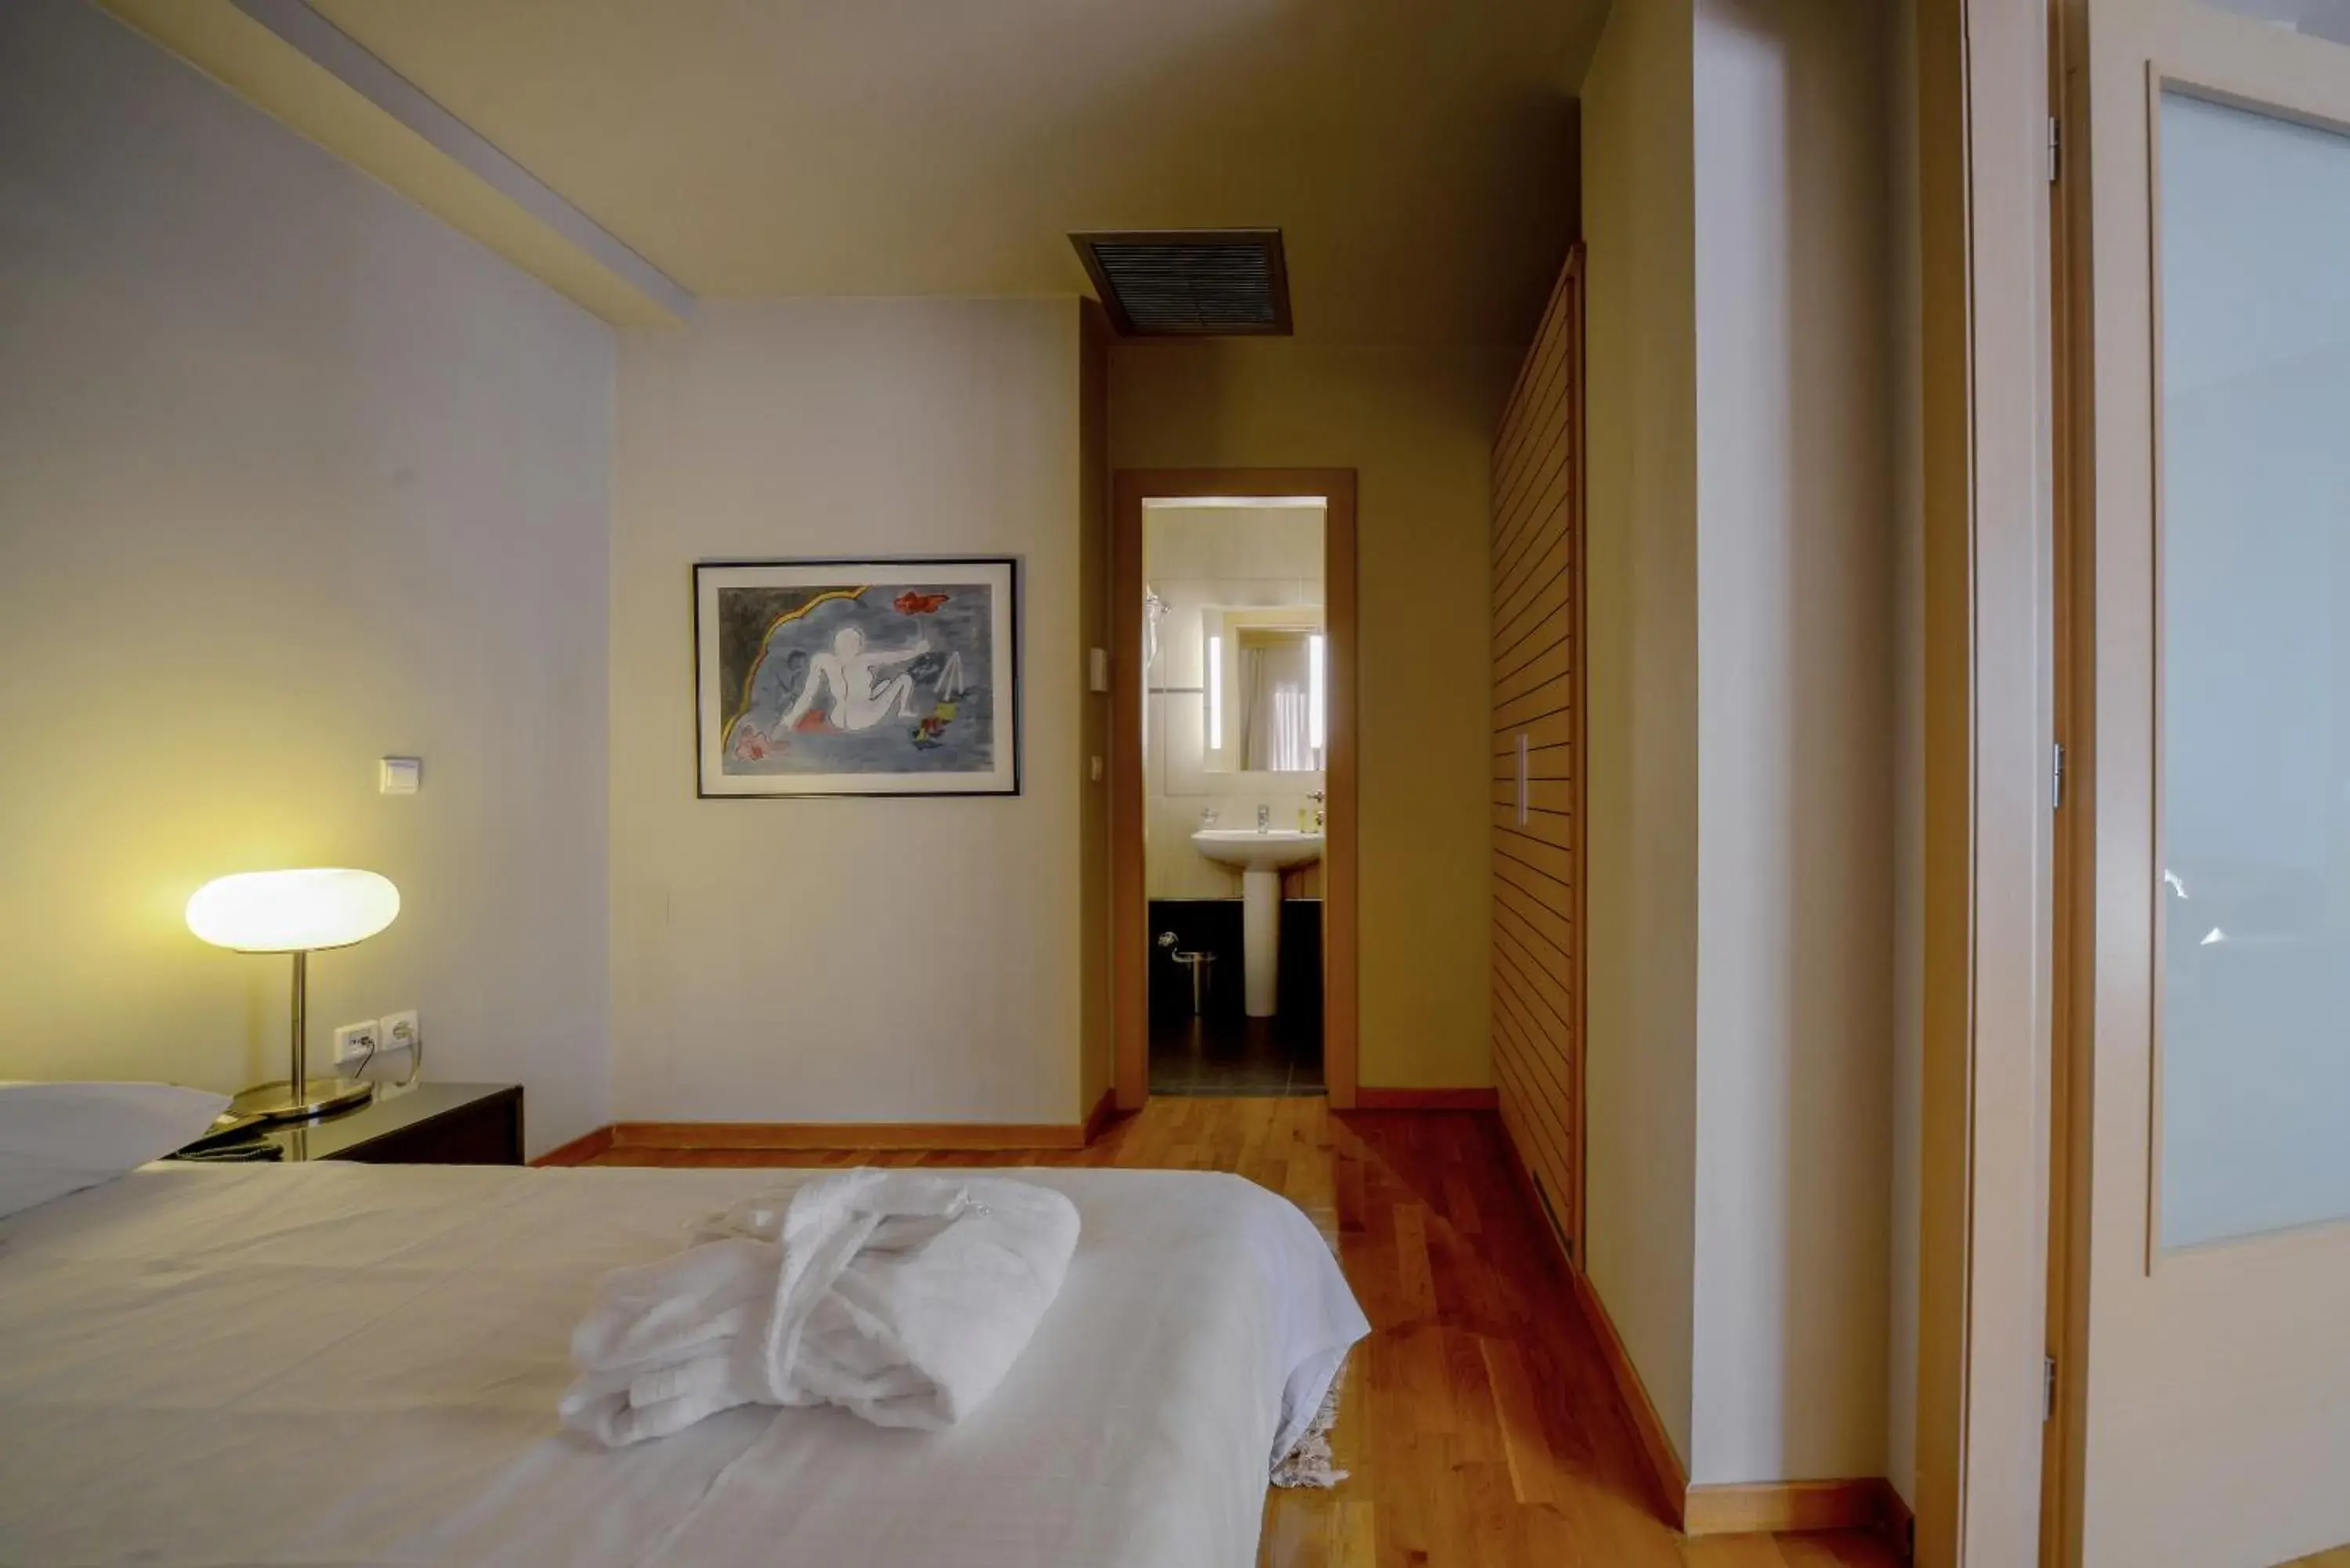 Bedroom, Room Photo in Astoria